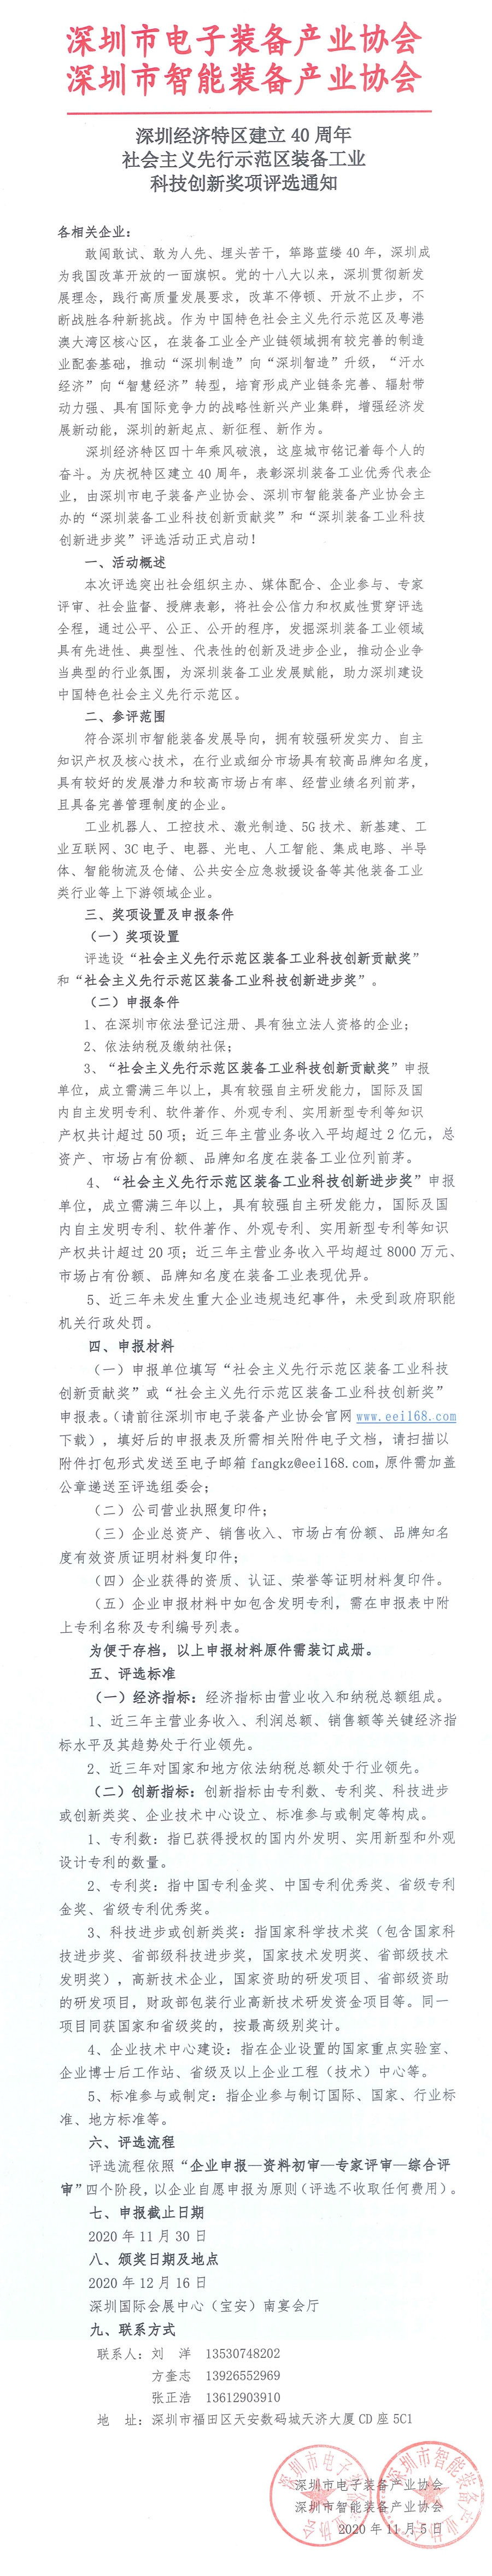 深圳经济特区建立40周年 社会主义先行示范区装备工业 科技创新奖项评选通知(图1)